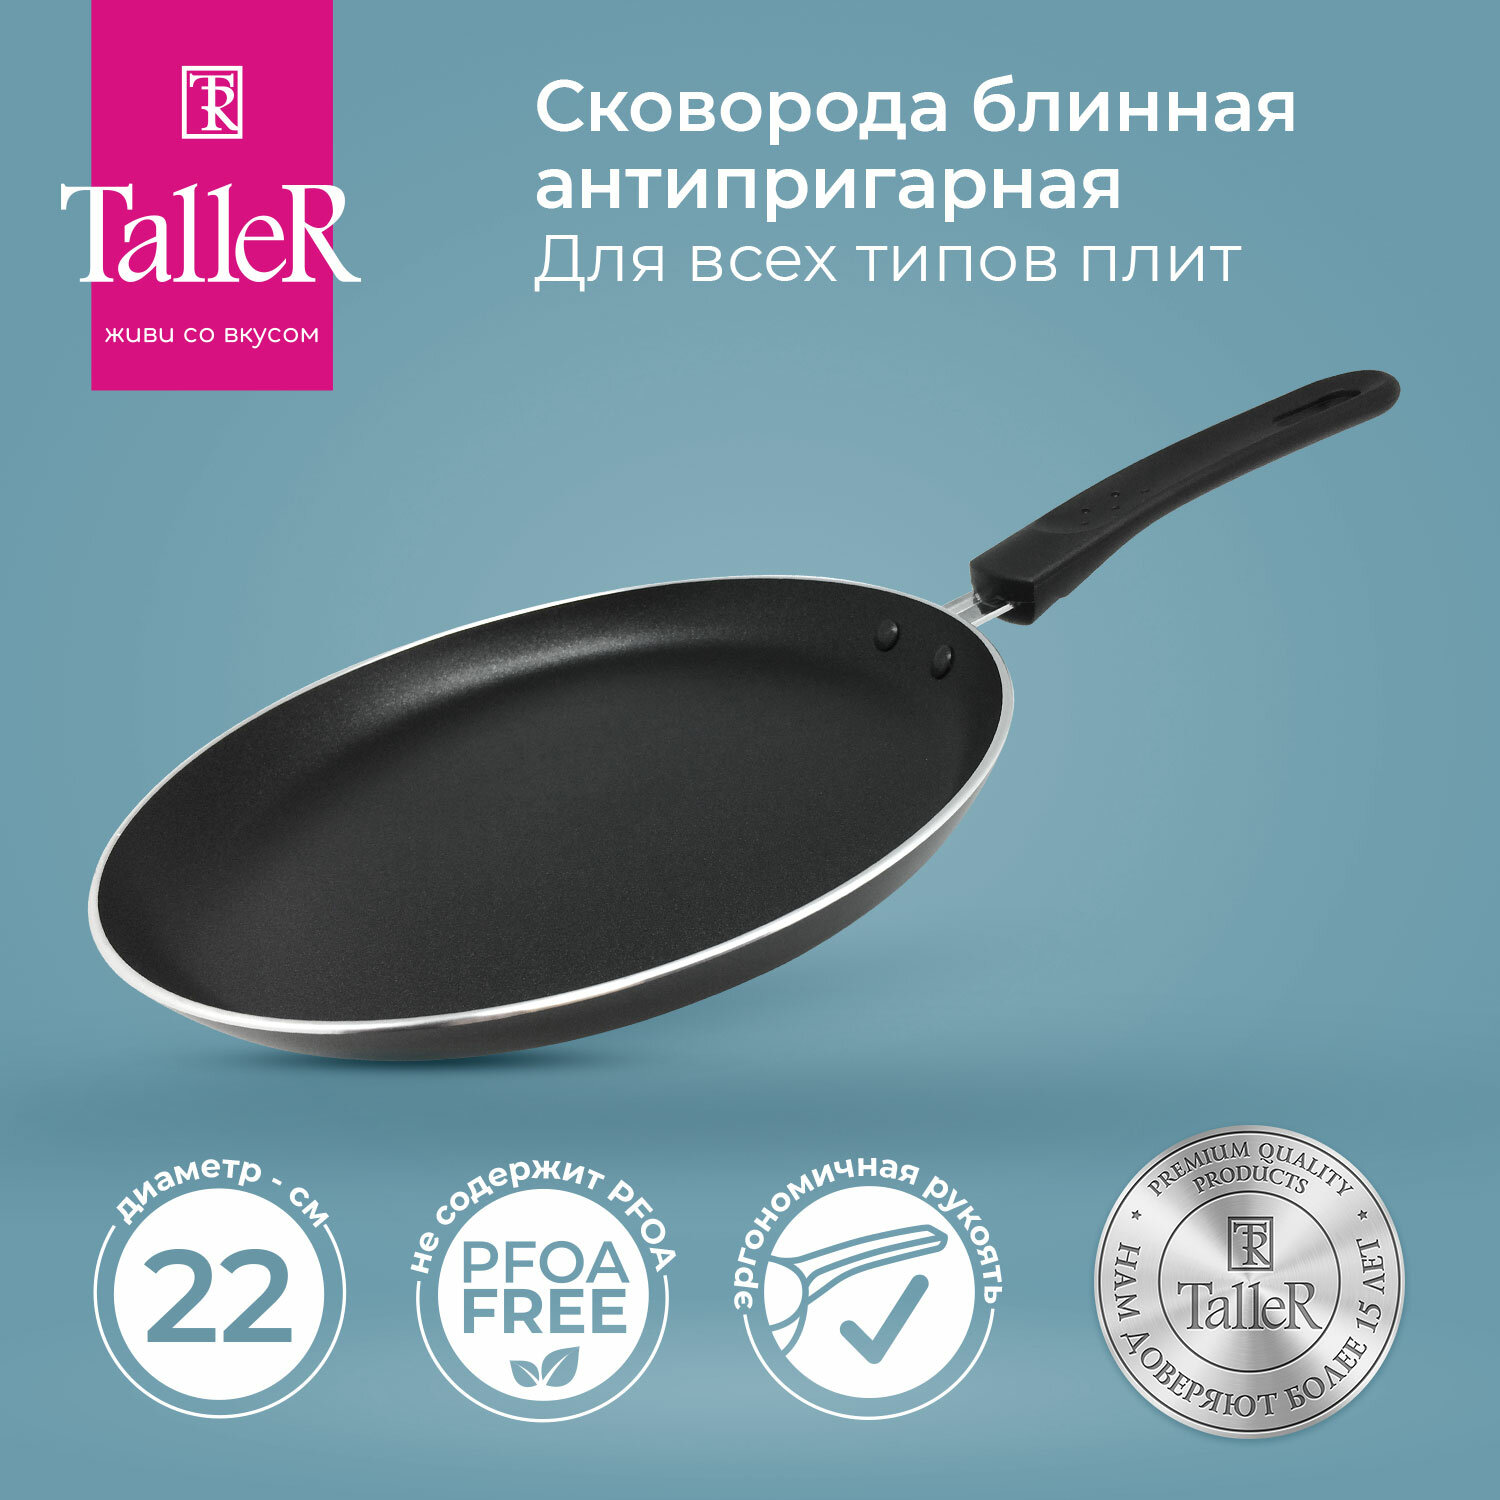 Сковорода для блинов TalleR - фото №1